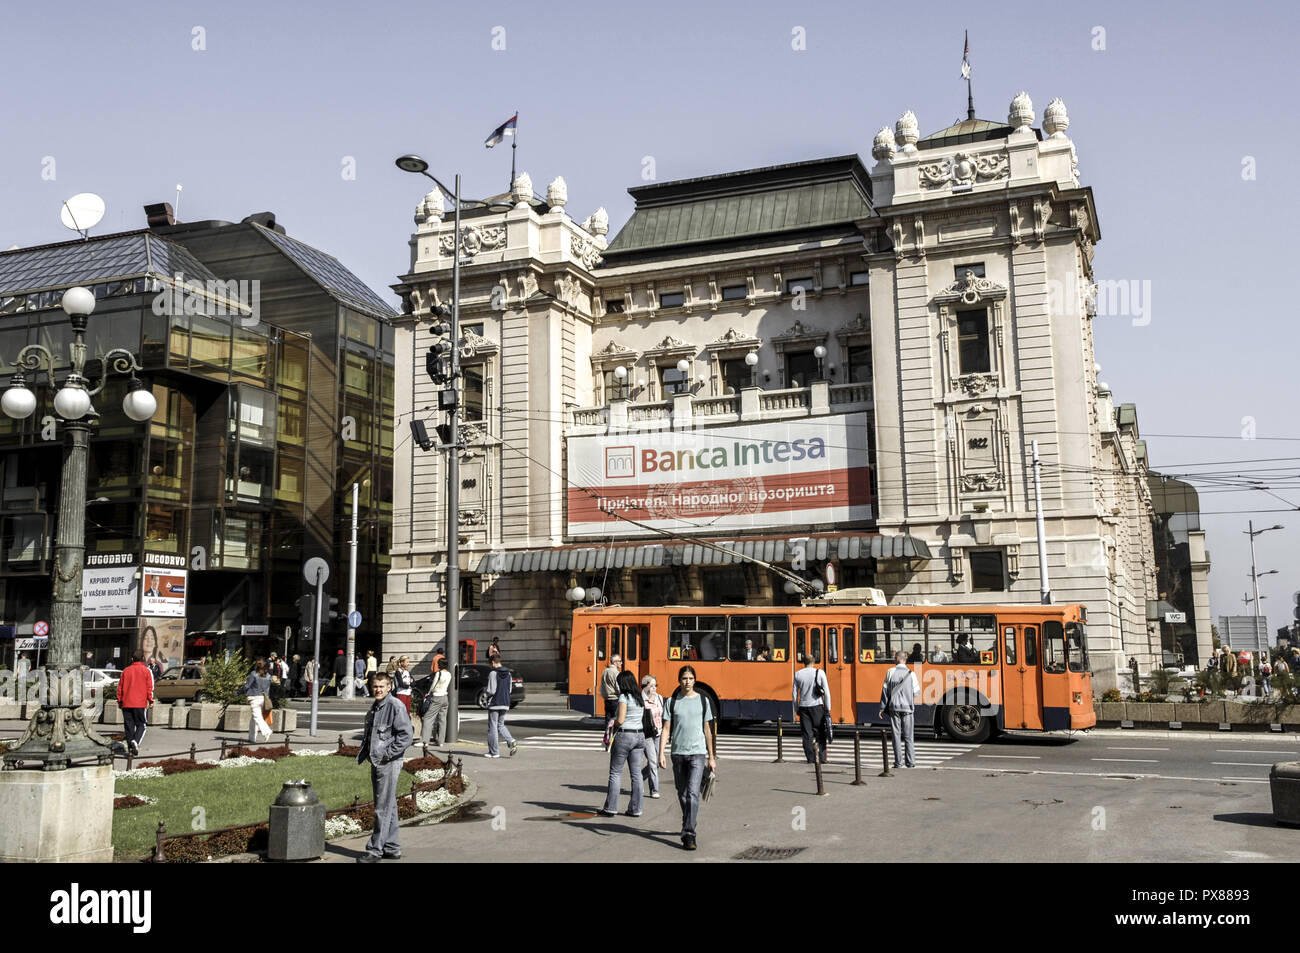 Beograd, city center, square Trg Republike, Serbia-Montenegro, Belgrade Stock Photo